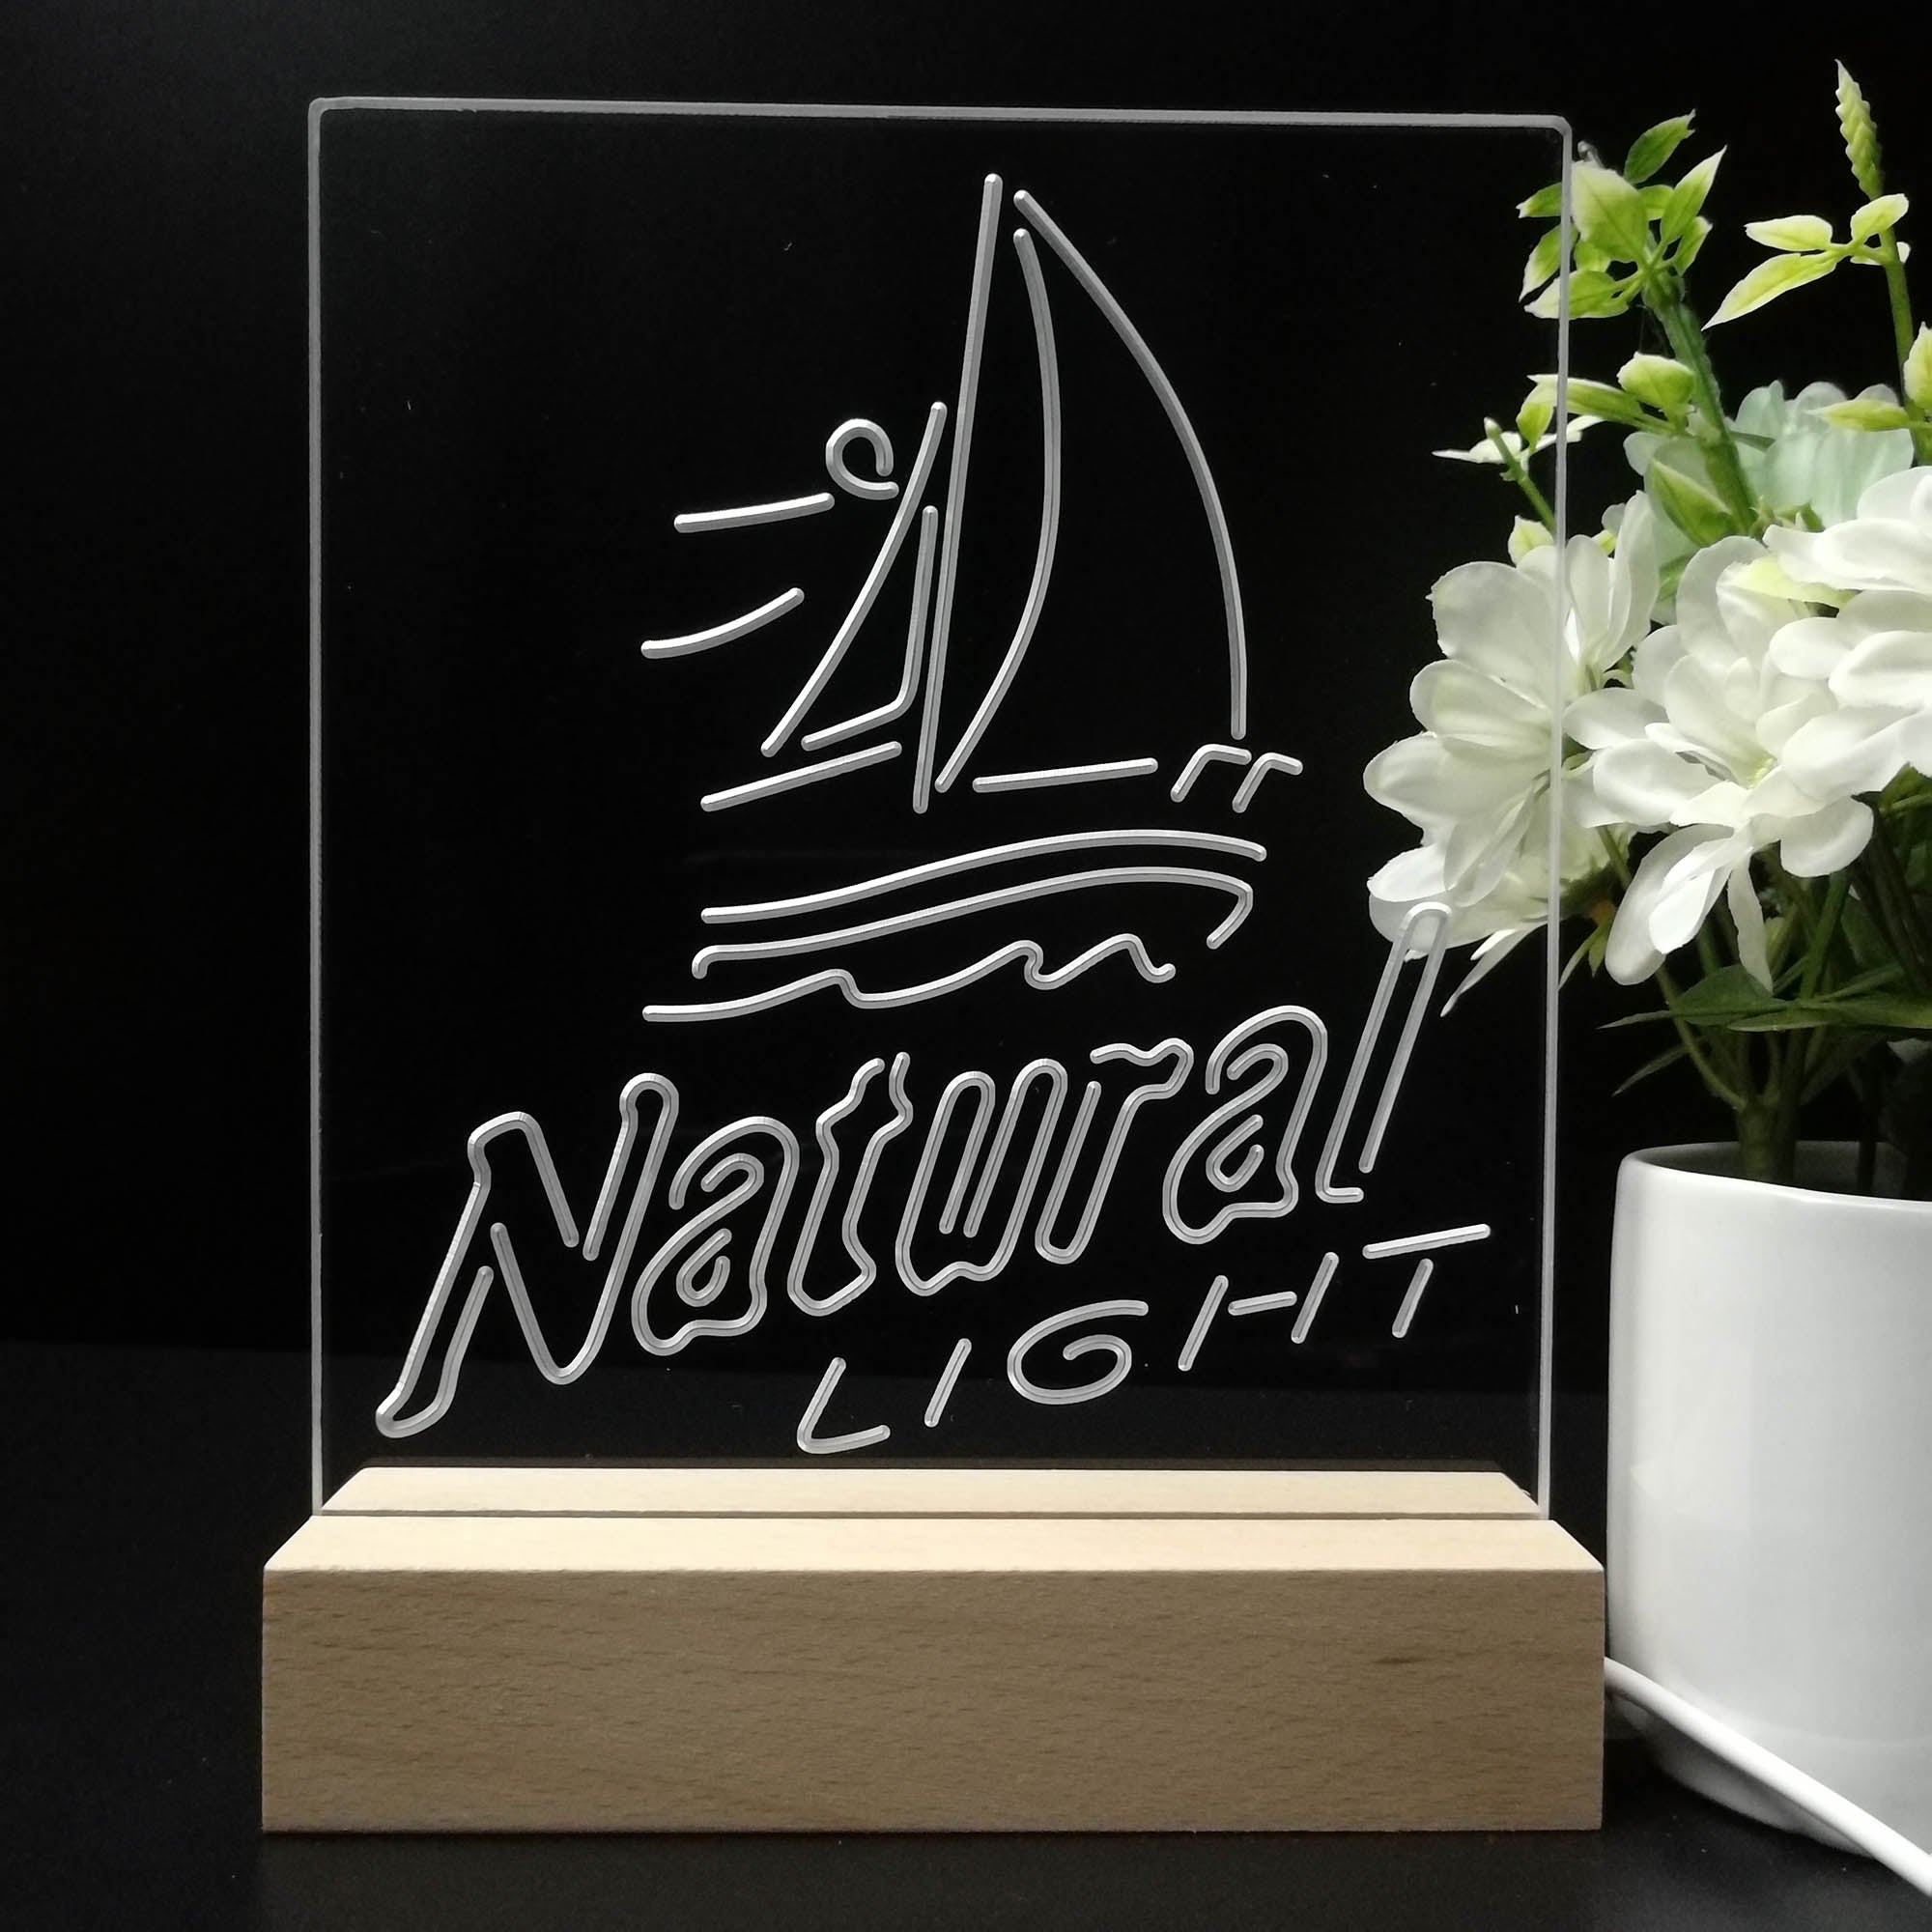 Natural Light Sail boat 3D LED Illusion Night Light Table Lamp